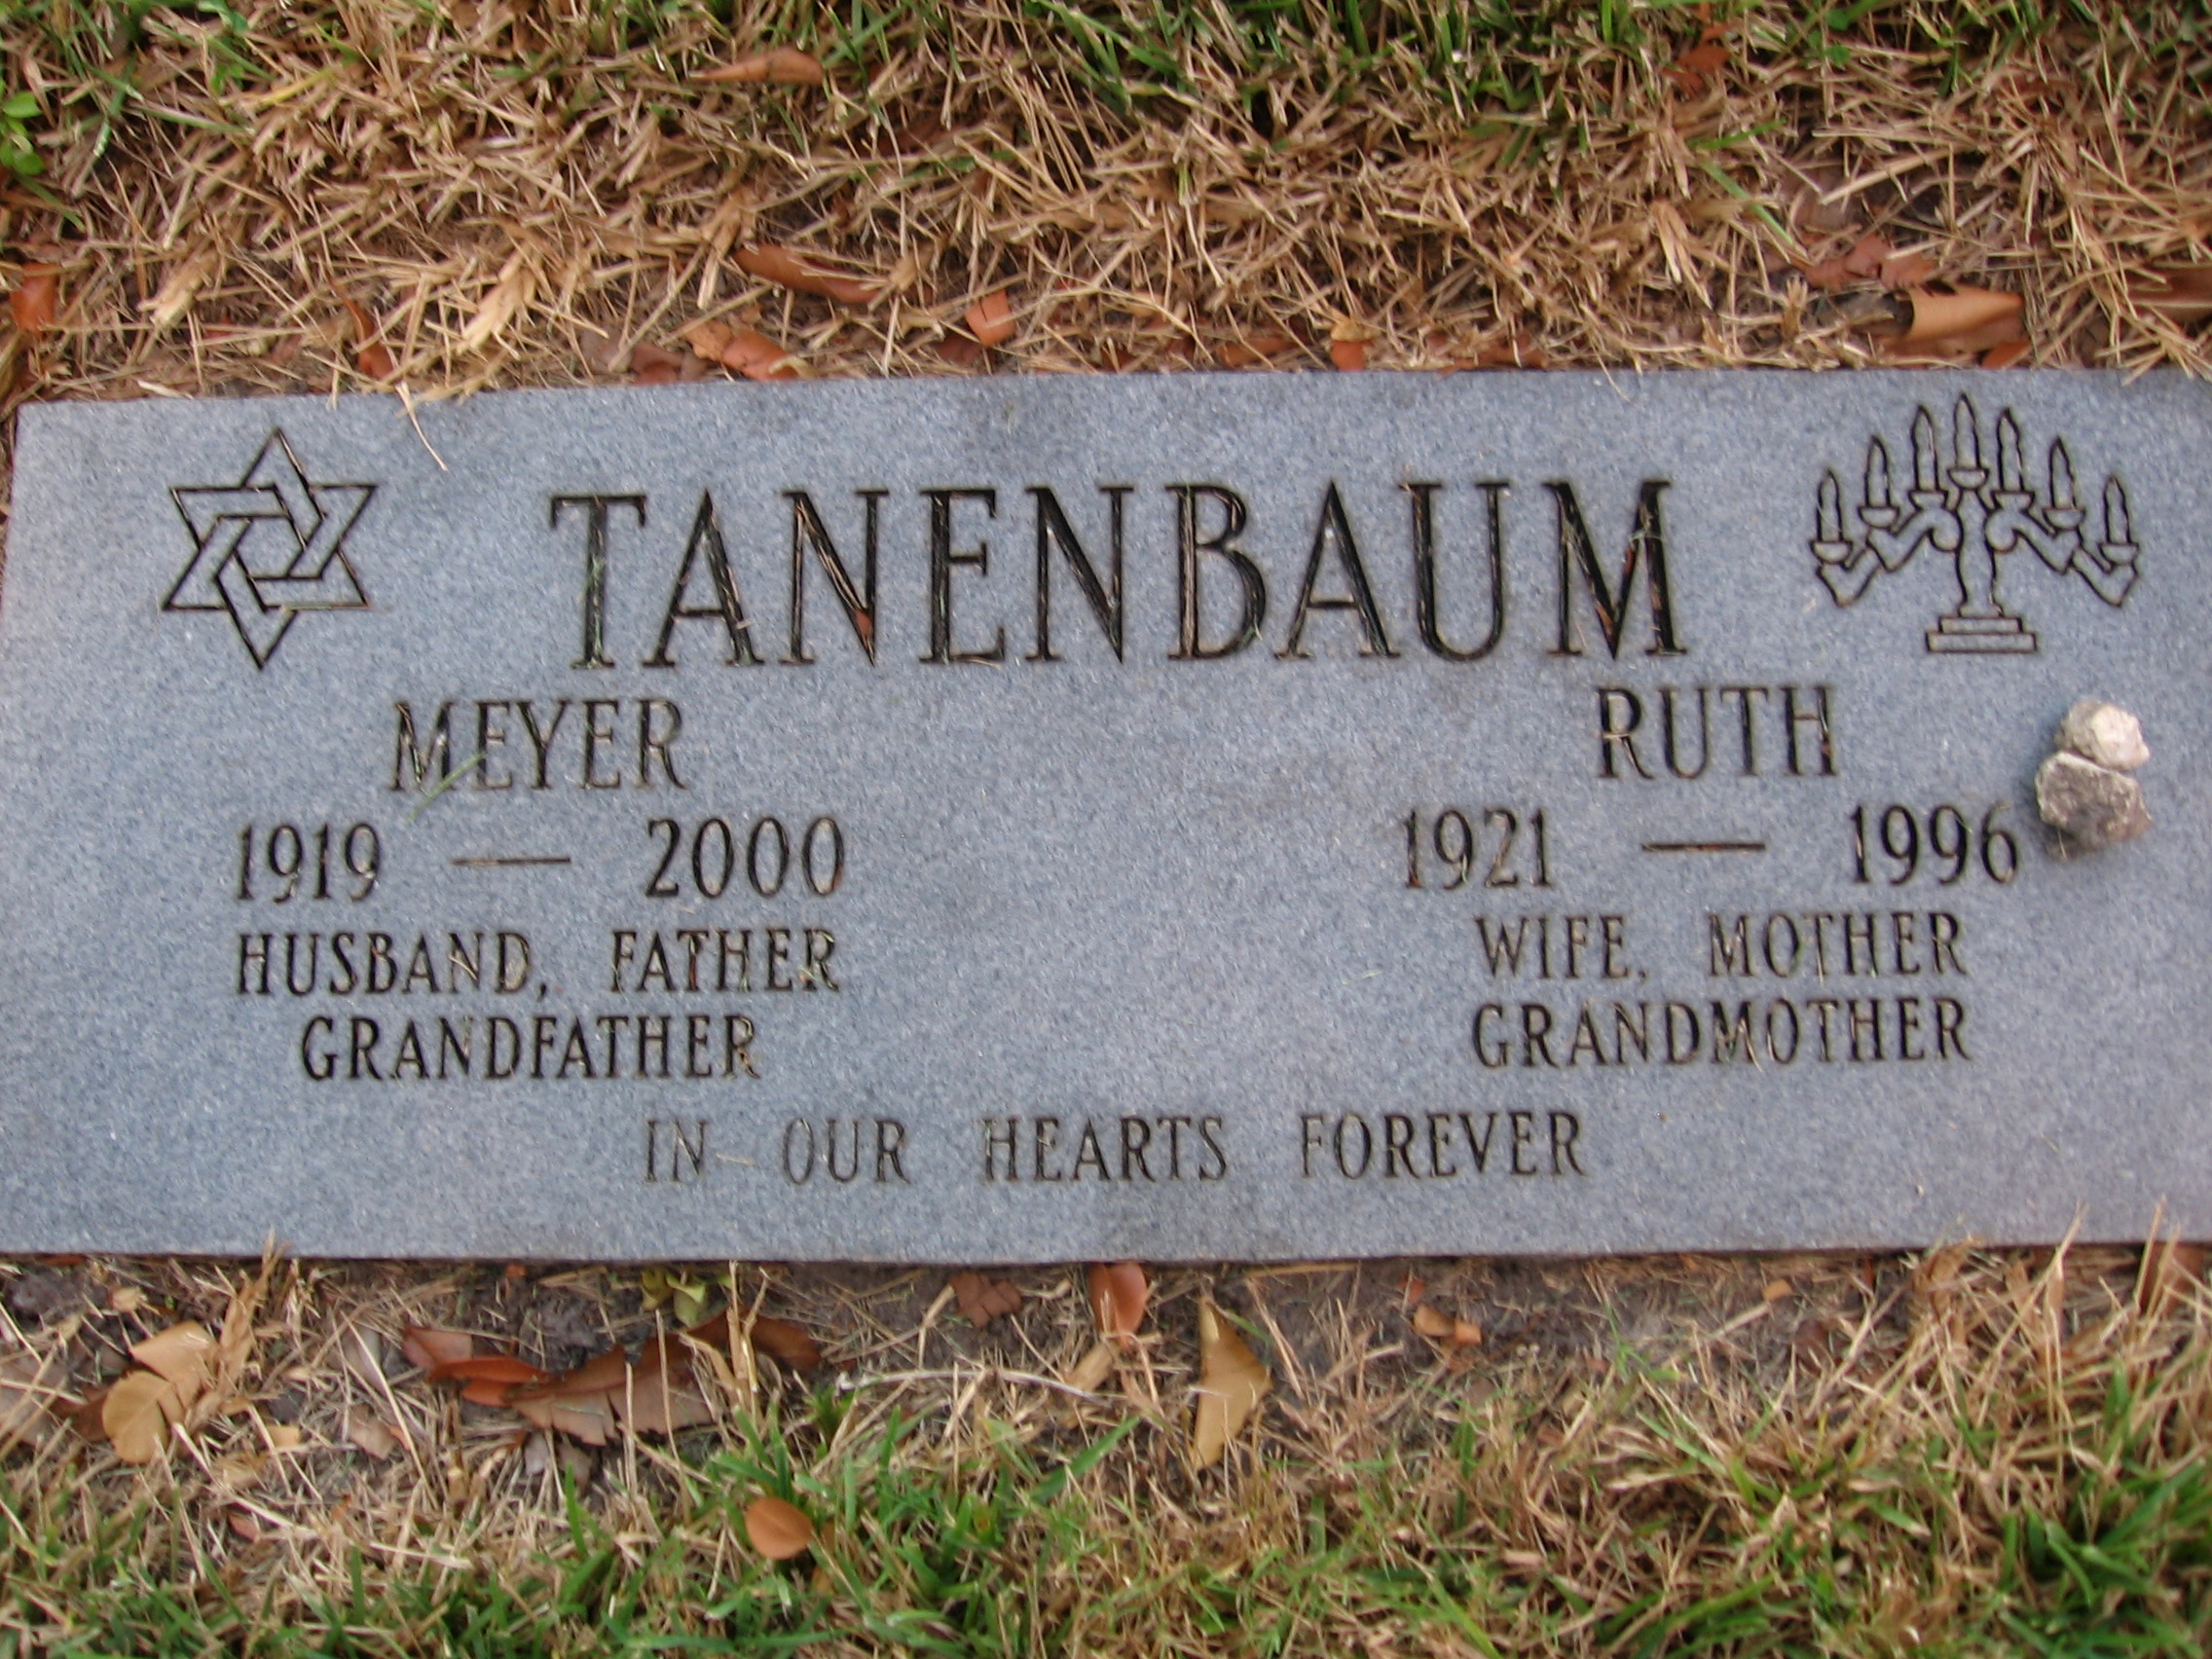 Ruth Tanenbaum